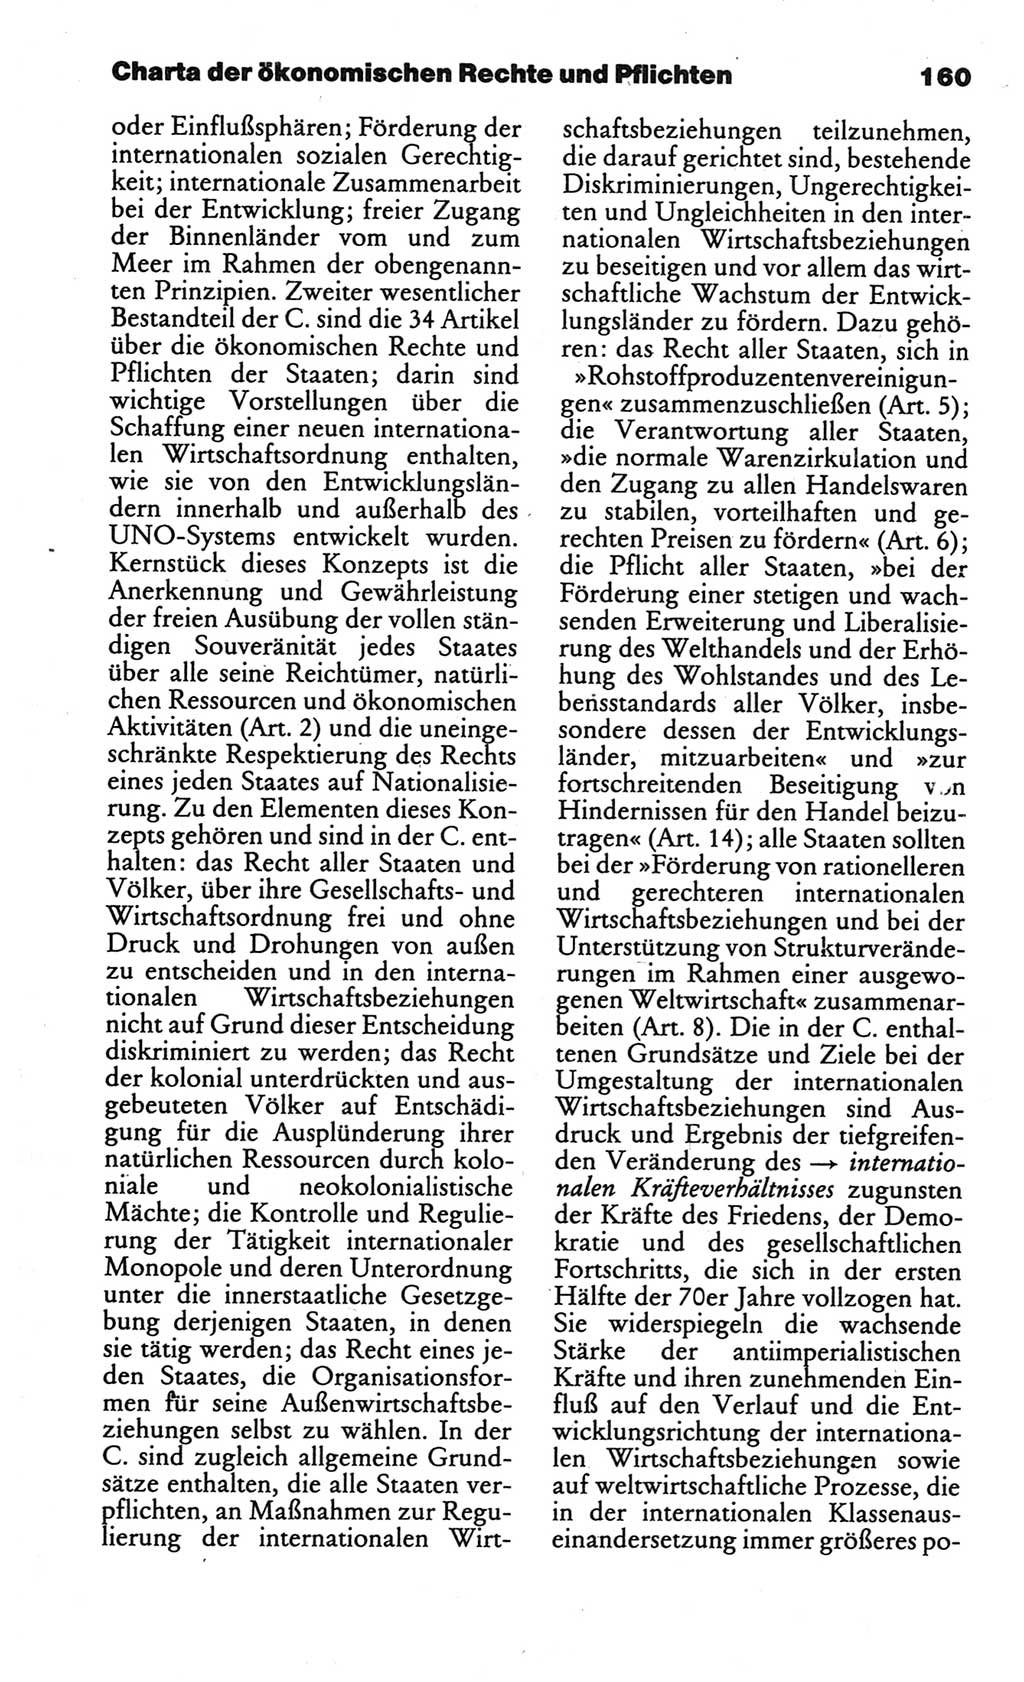 Kleines politisches Wörterbuch [Deutsche Demokratische Republik (DDR)] 1986, Seite 160 (Kl. pol. Wb. DDR 1986, S. 160)